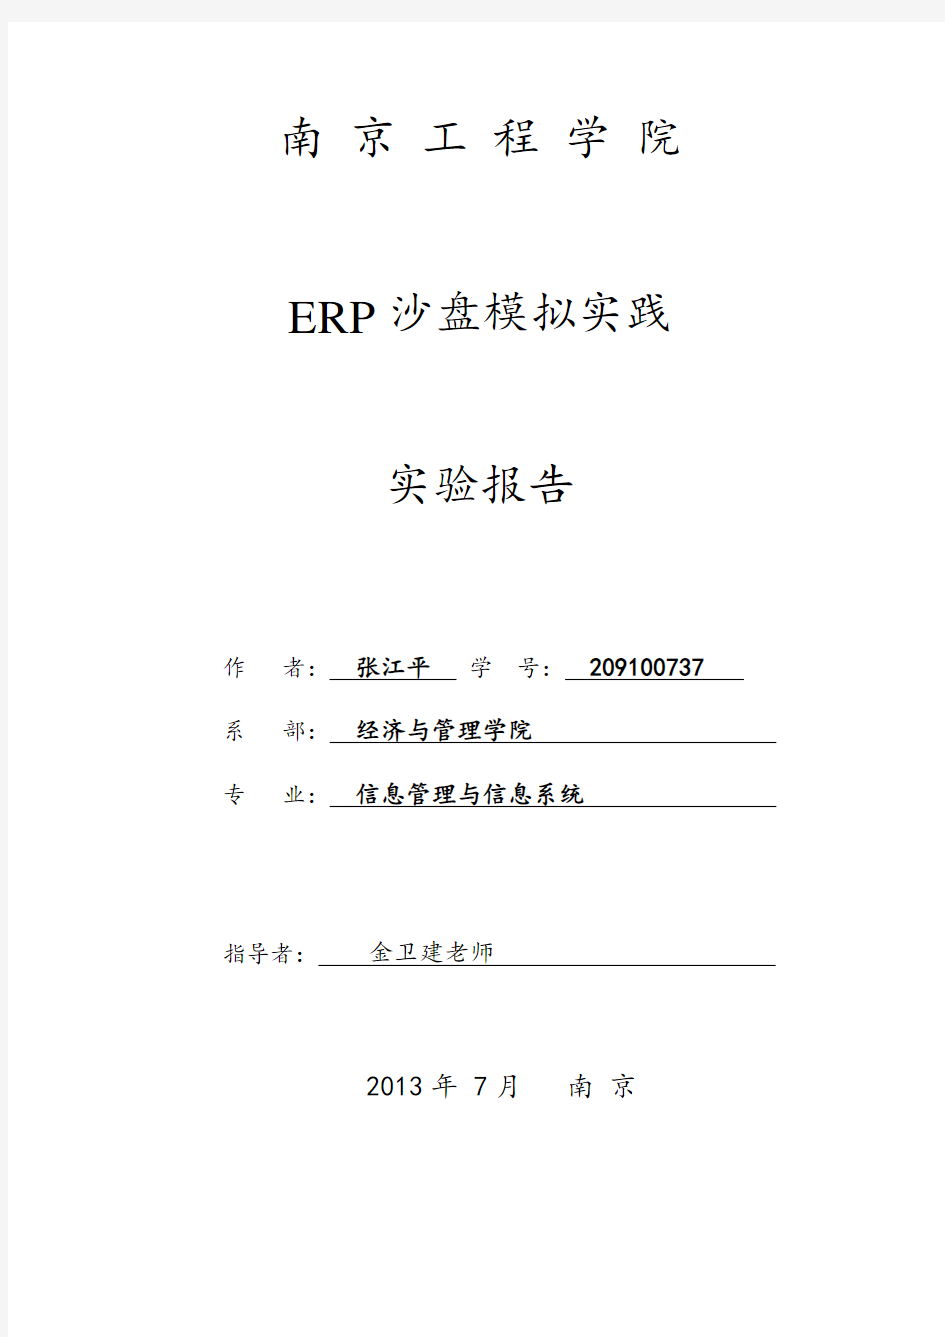 ERP沙盘模拟实践实验报告